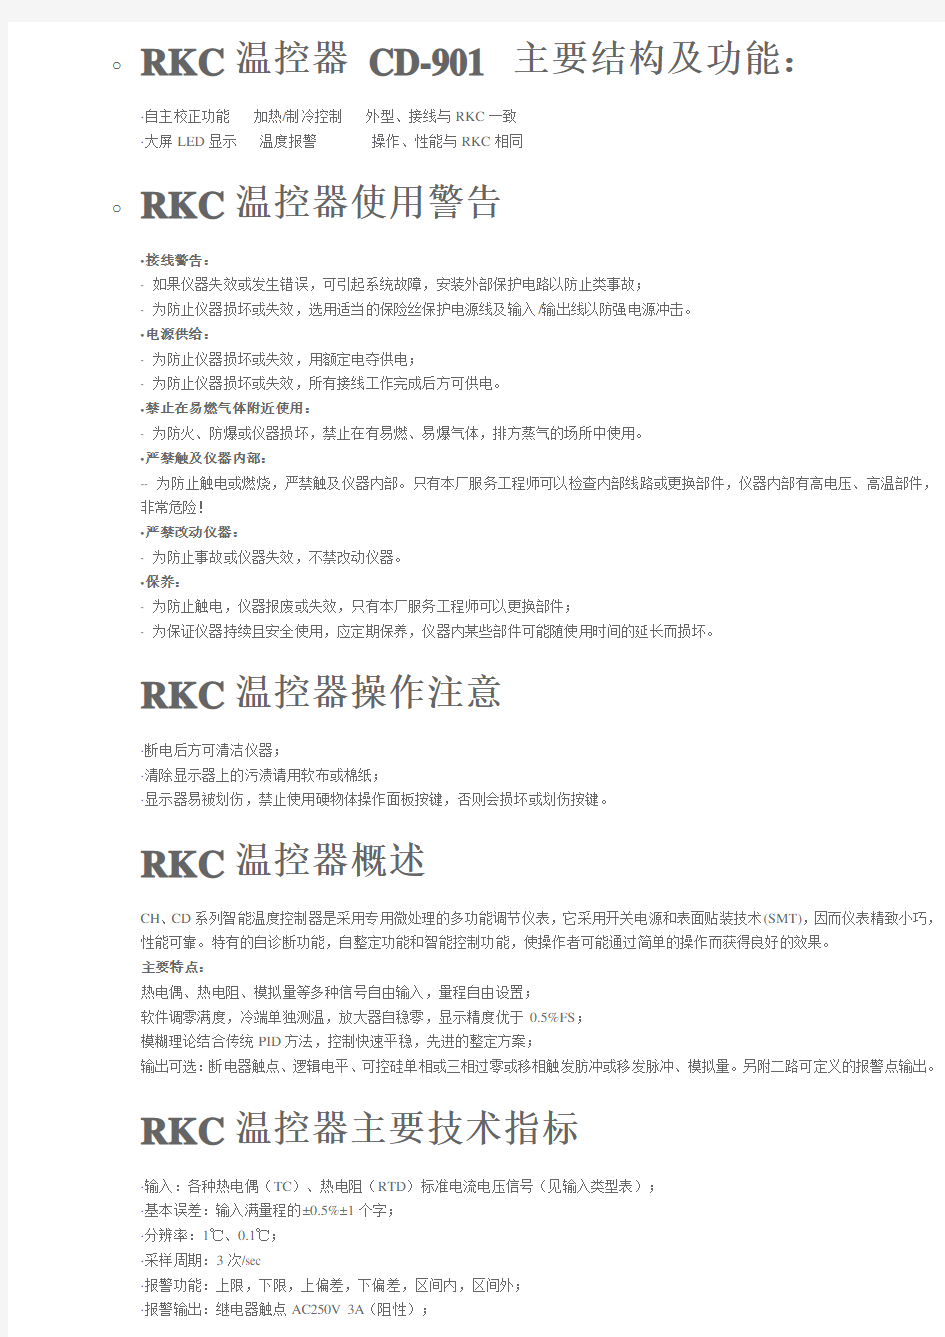 RKC温控器CD-901中文说明书资料